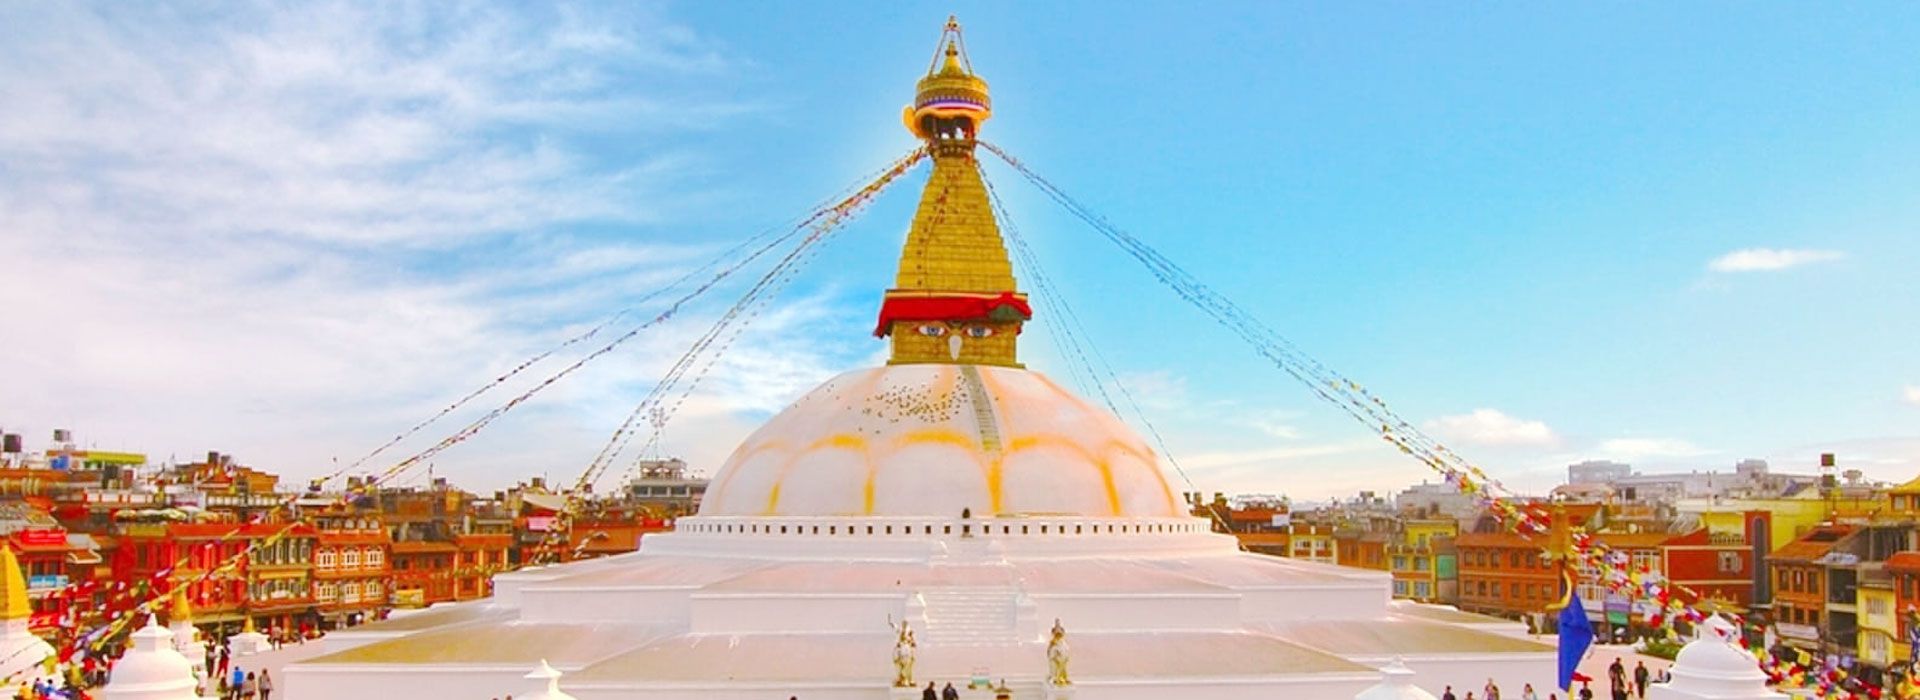 boudhanath Stupa at Kathmandu